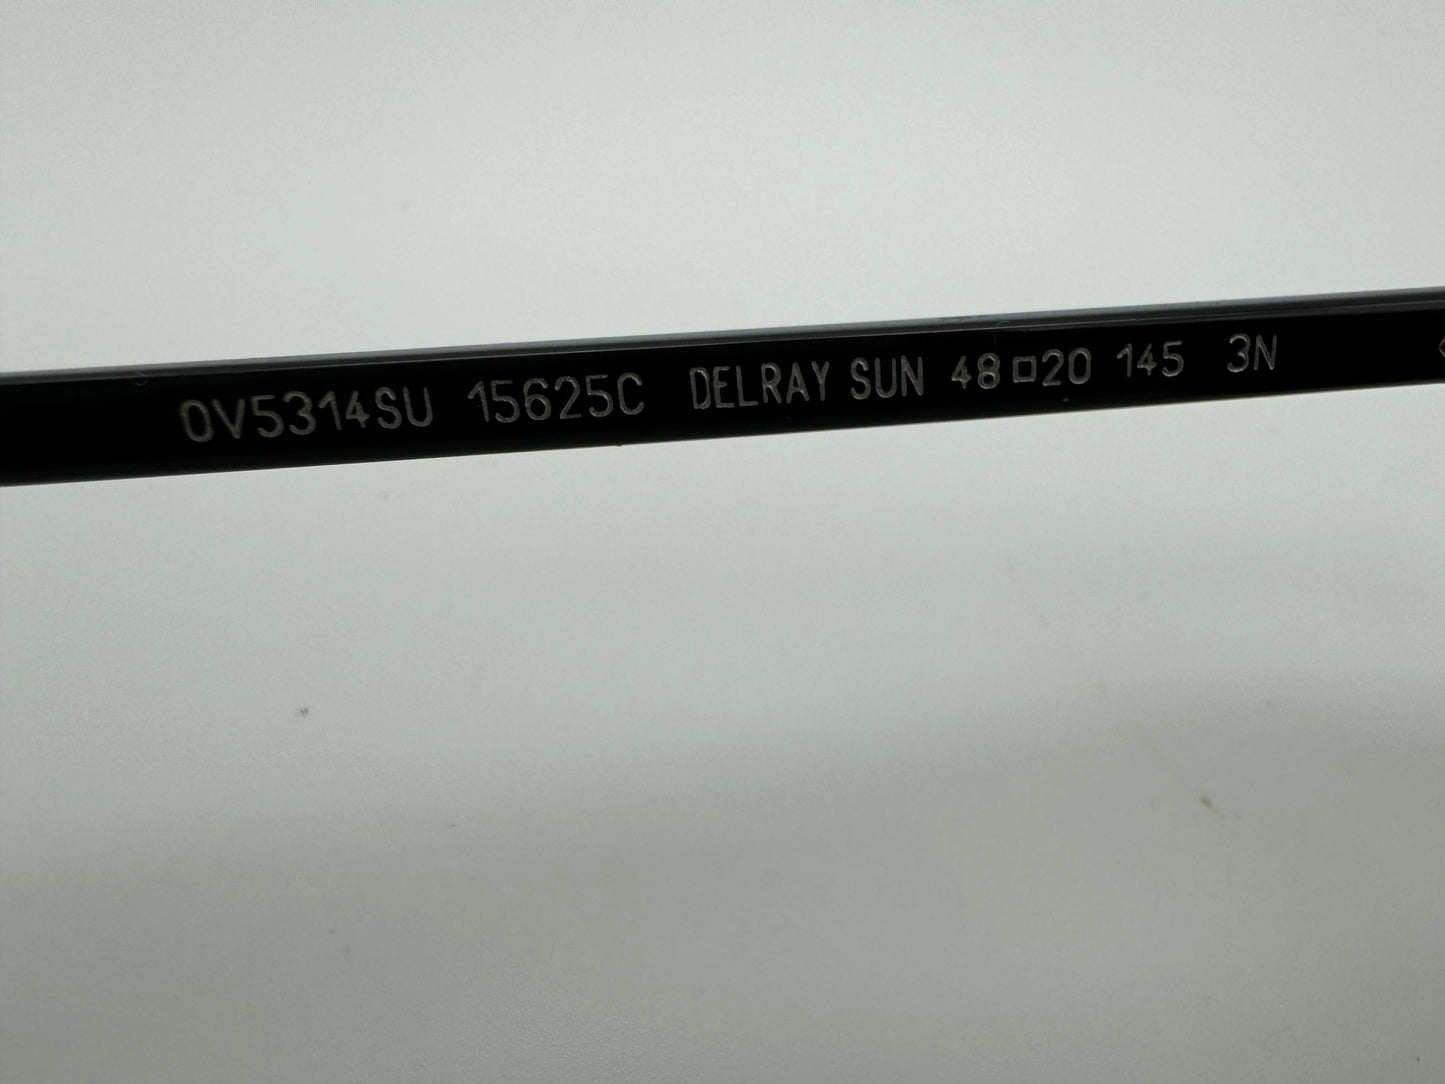 Oliver Peoples DELRAY SUN 48mm OV 5314 SU semi tortoise semi matte black / Mirror Silver Italy Preowned